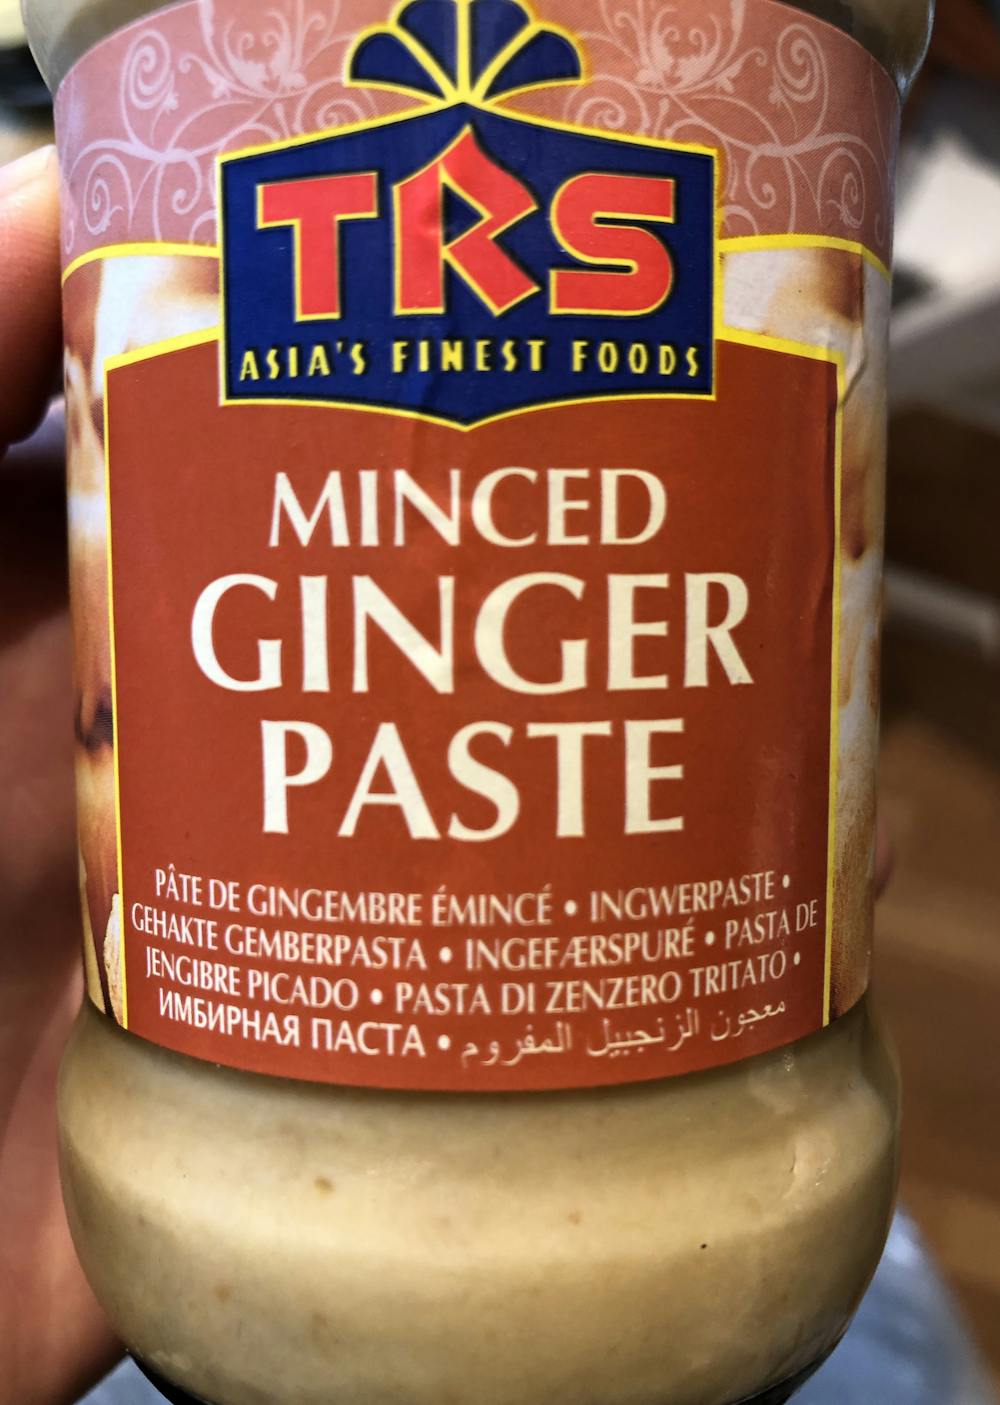 Minced ginger paste, TRS